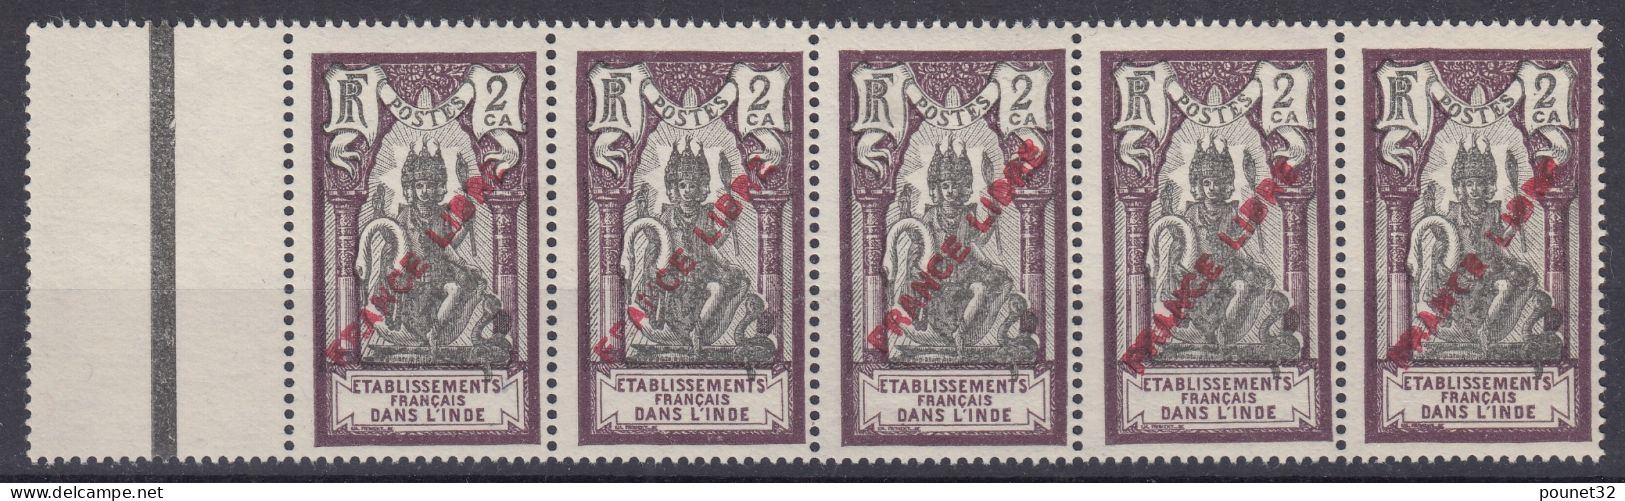 TIMBRE INDE FRANCE LIBRE N° 132 EN BANDE DE 5 NEUVE ** LUXE GOMME SANS CHARNIERE - Unused Stamps